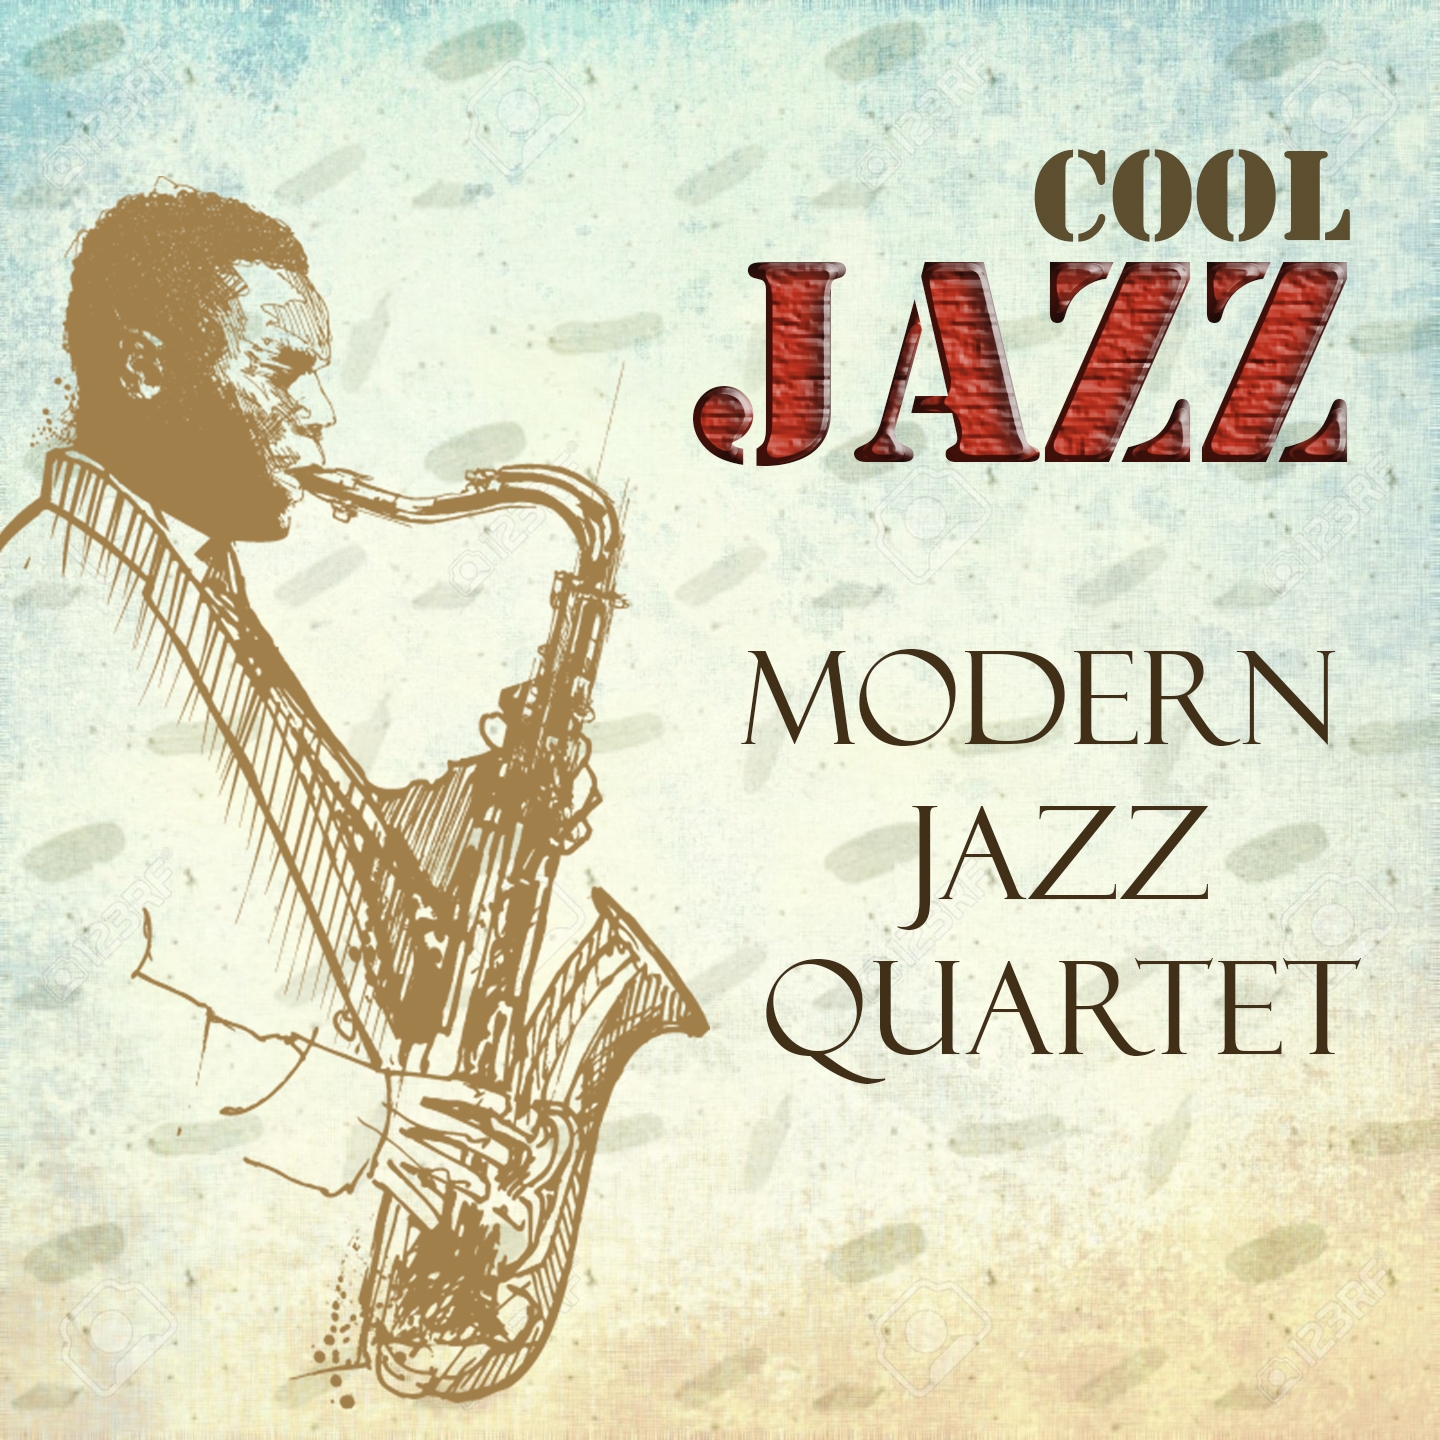 Cool Jazz, Modern Jazz Quartet